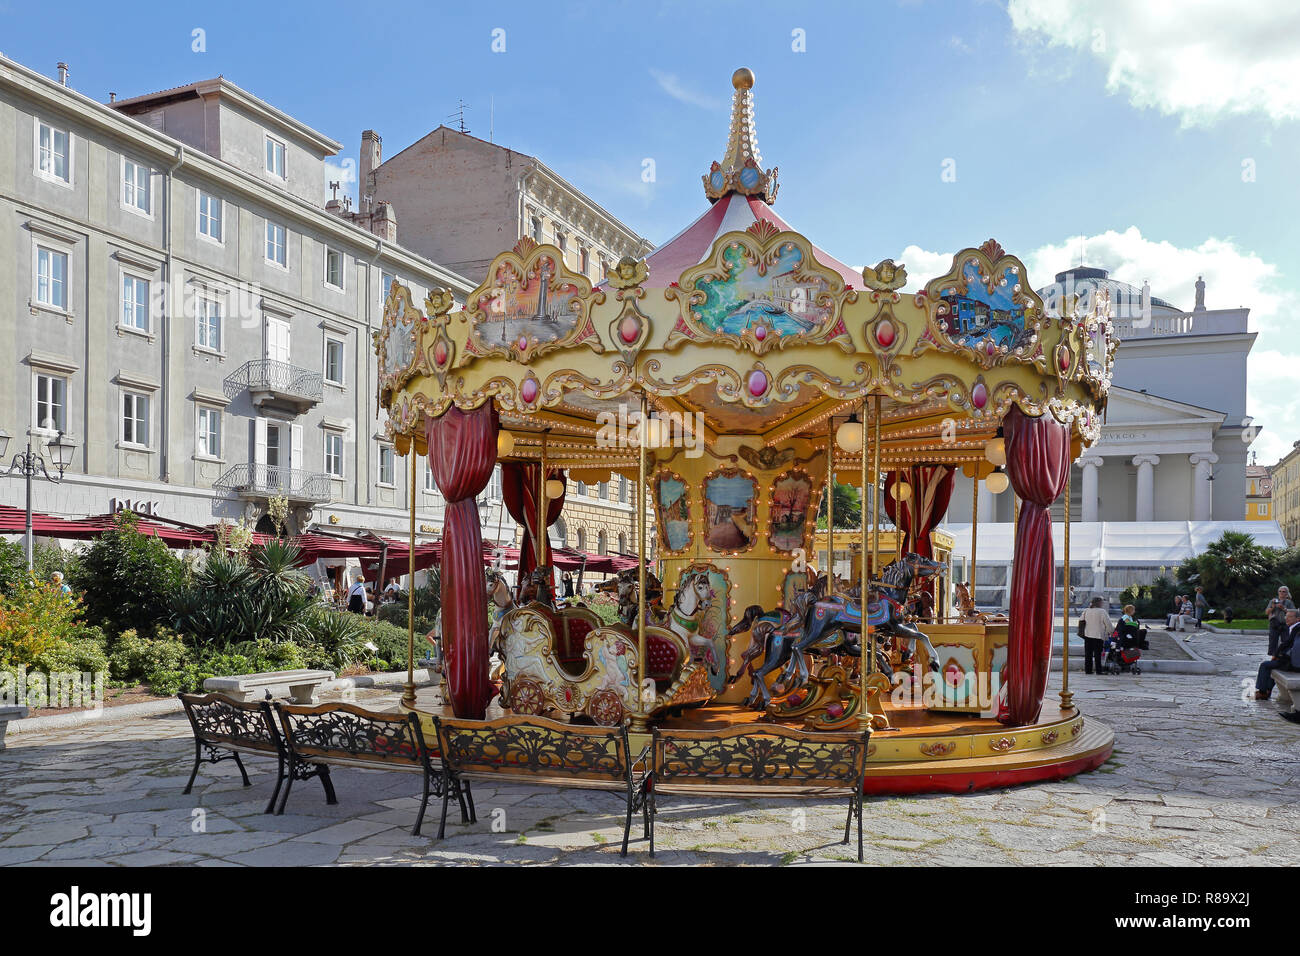 TRIESTE, ITALIA - 14 ottobre: Merry Go Round a Trieste il 14 ottobre 2014. Giostra tradizionale con tubi flessibili ride presso il park di Trieste, in Italia. Foto Stock